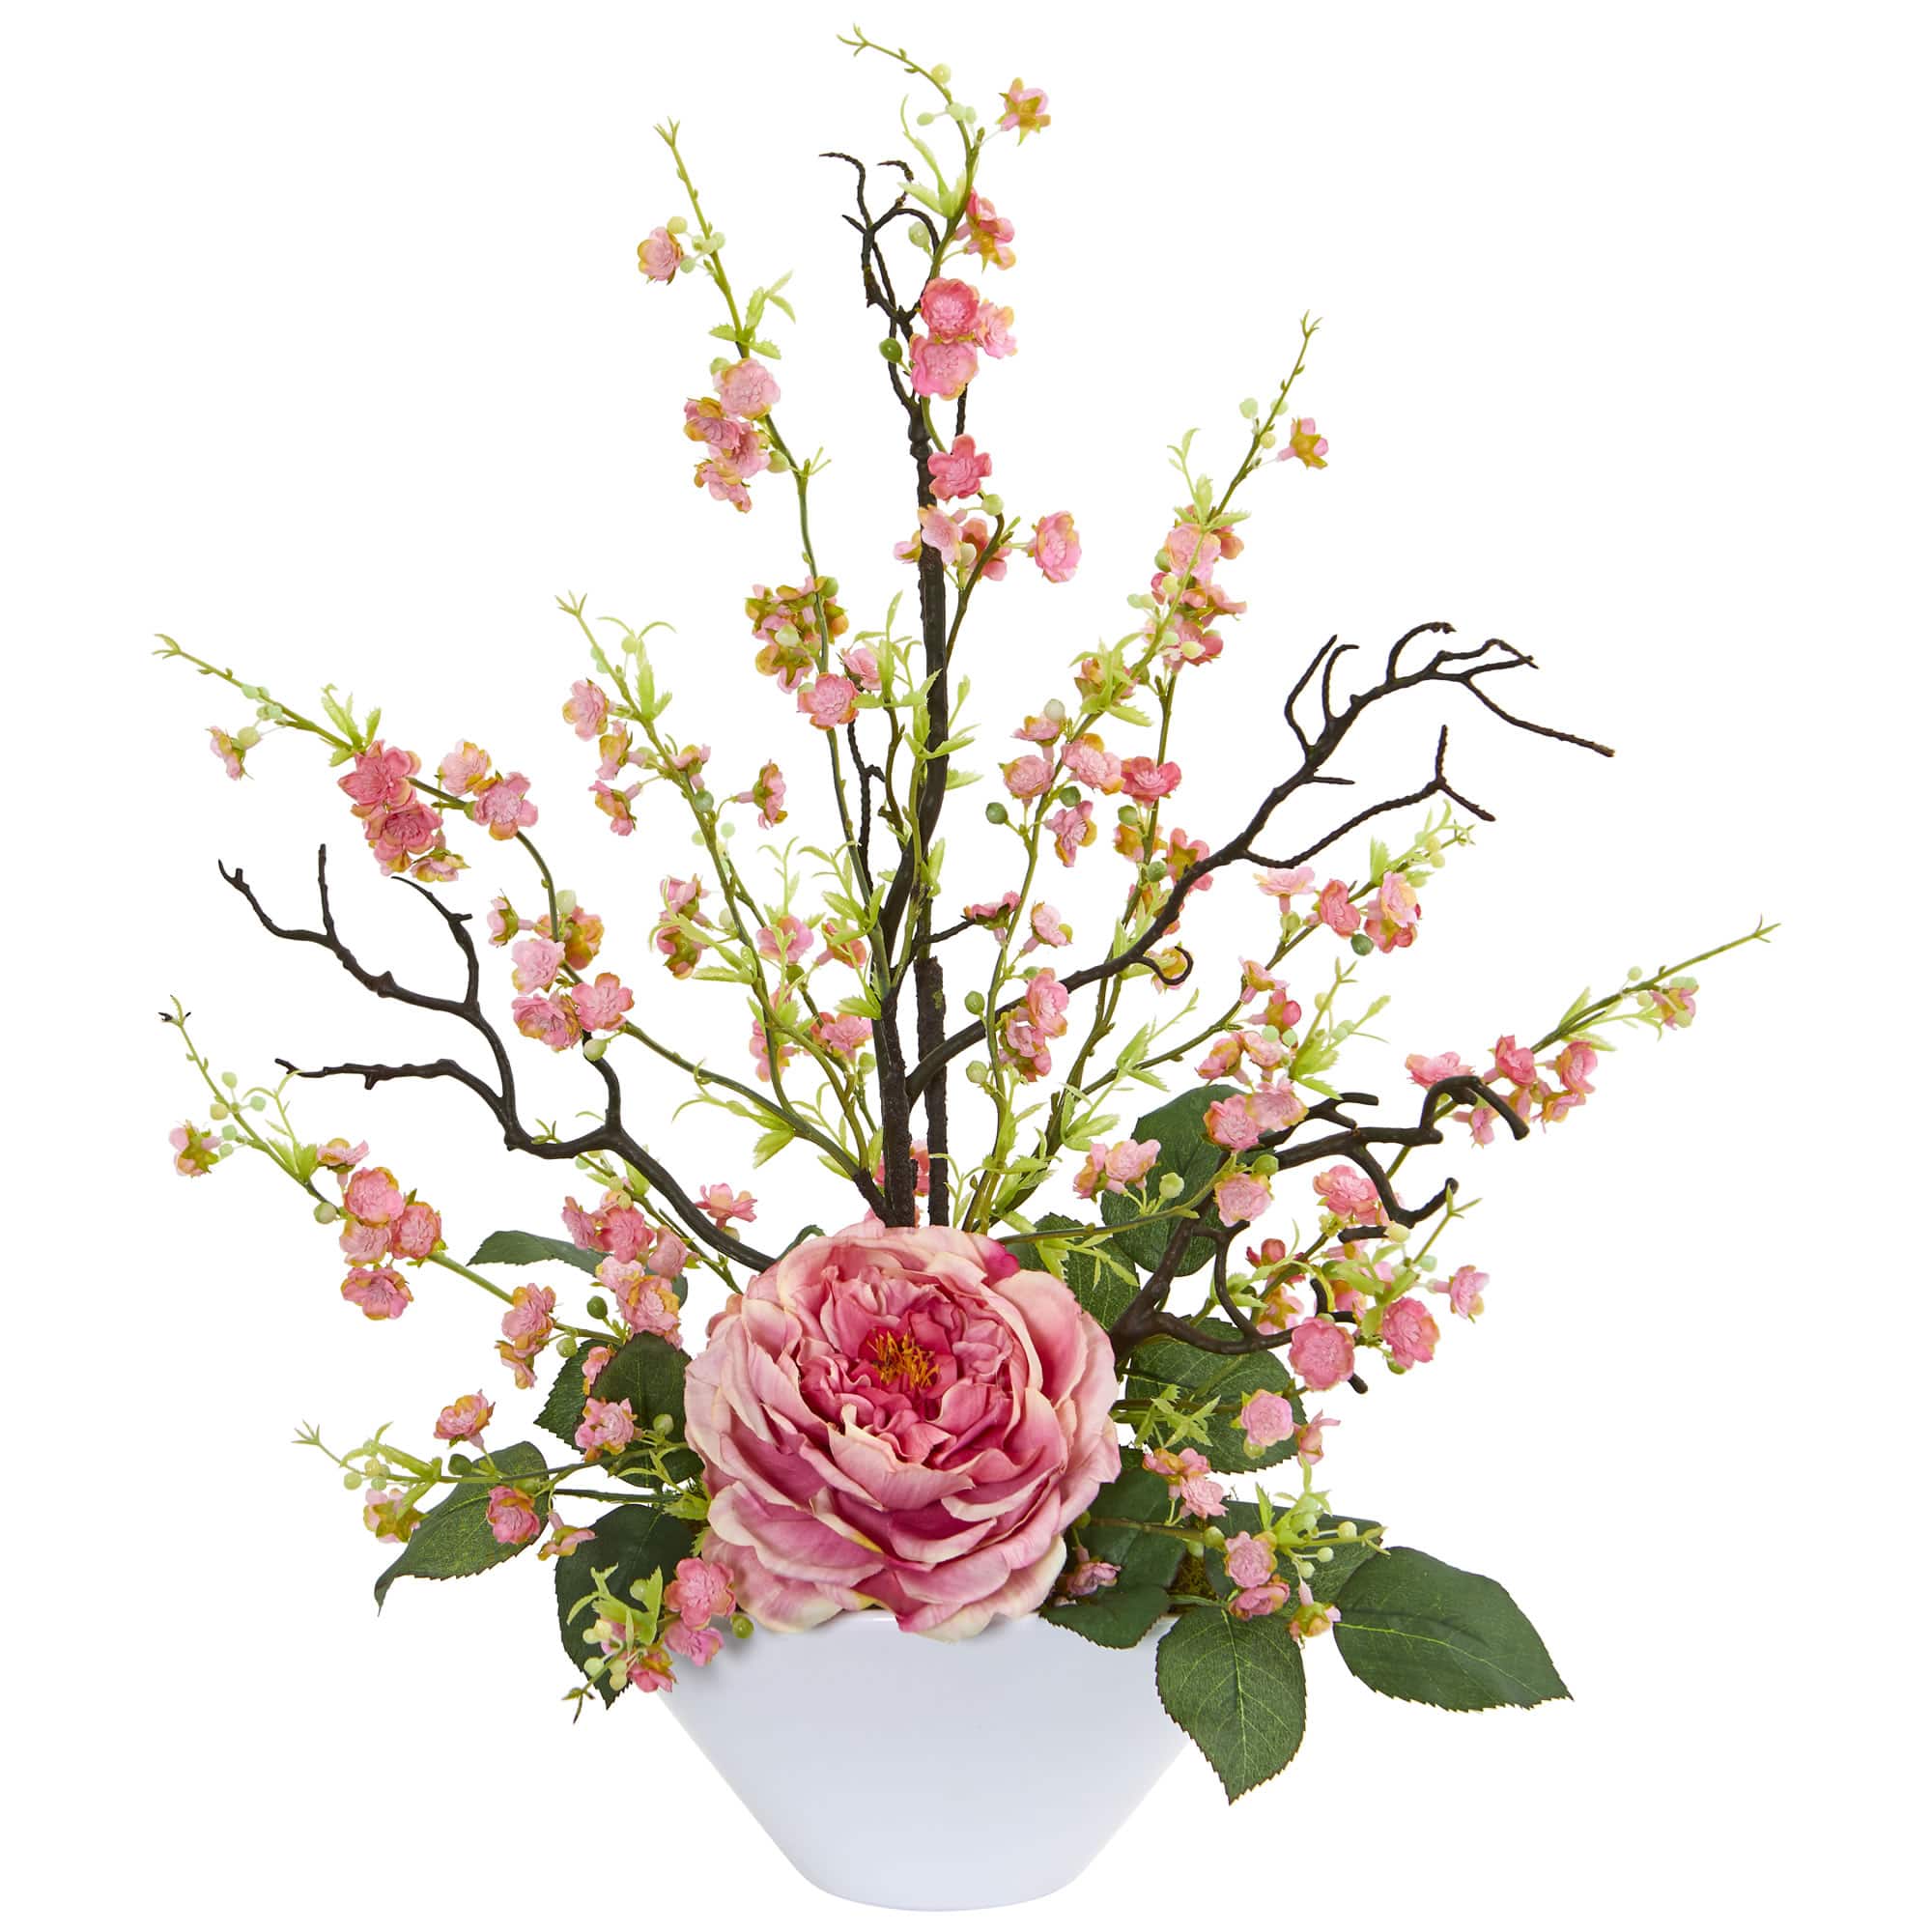 23" Rose & Cherry Blossom Arrangement in White Planter